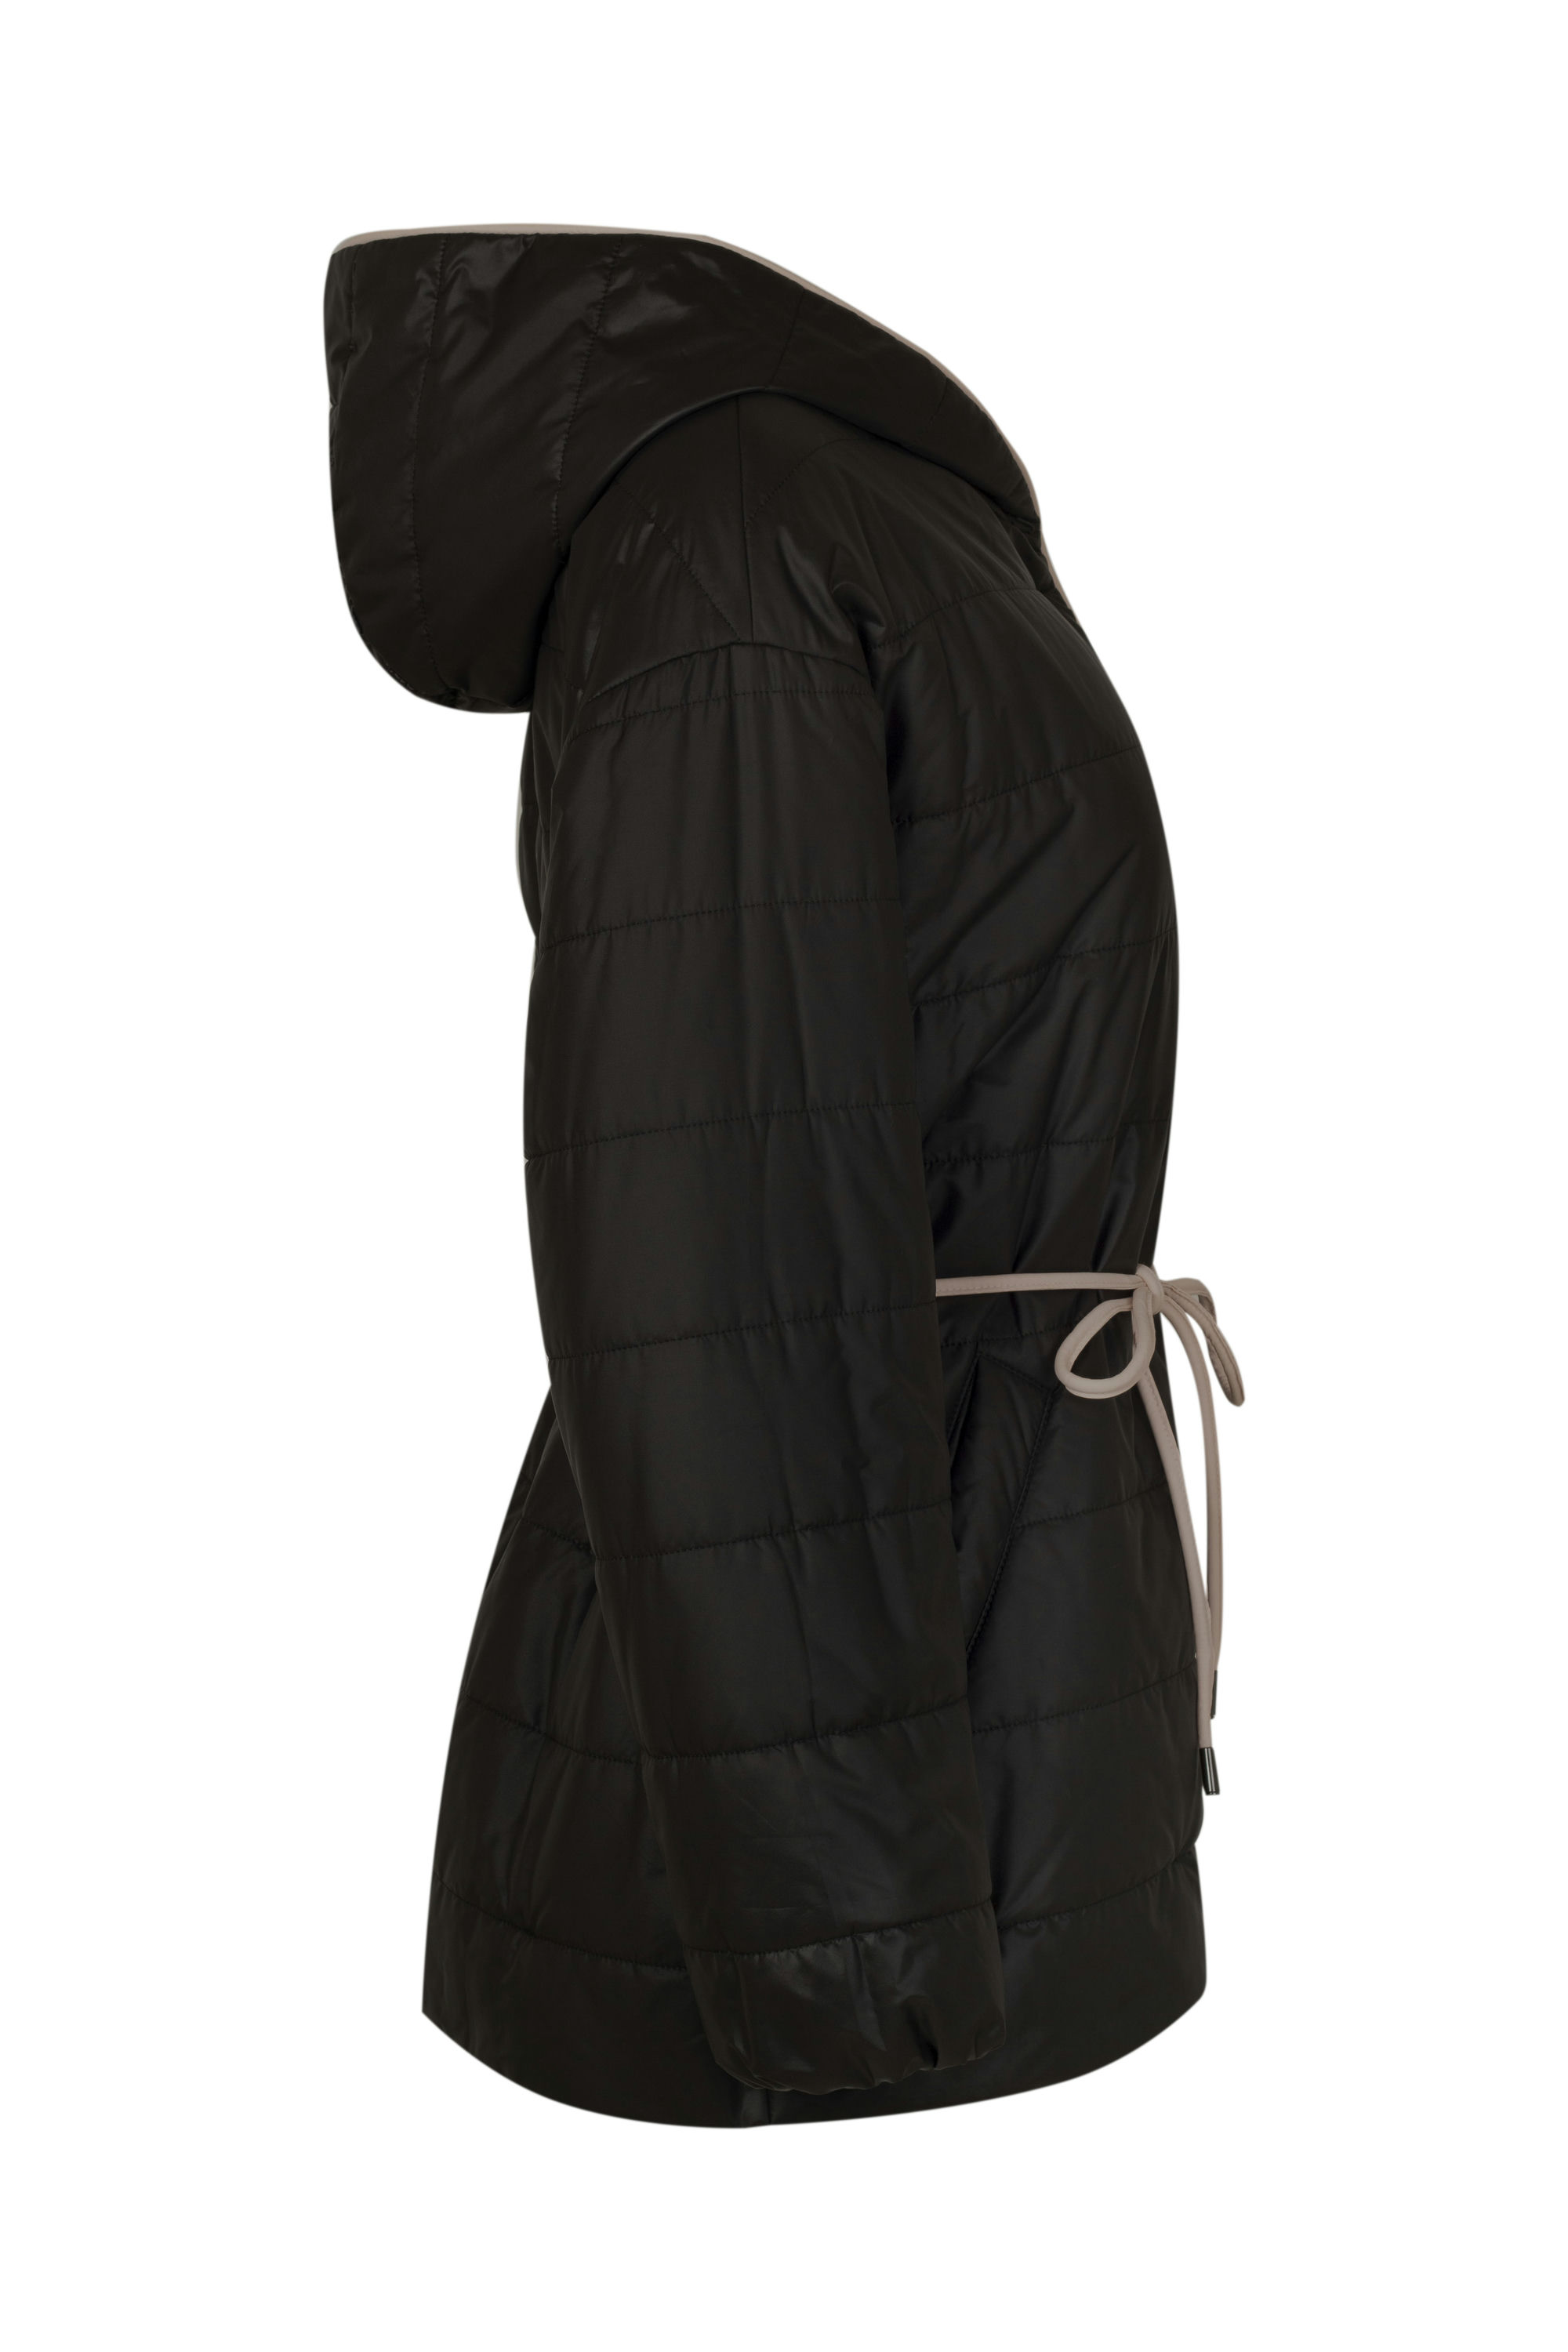 Куртка женская плащевая утепленная 4-12321-1